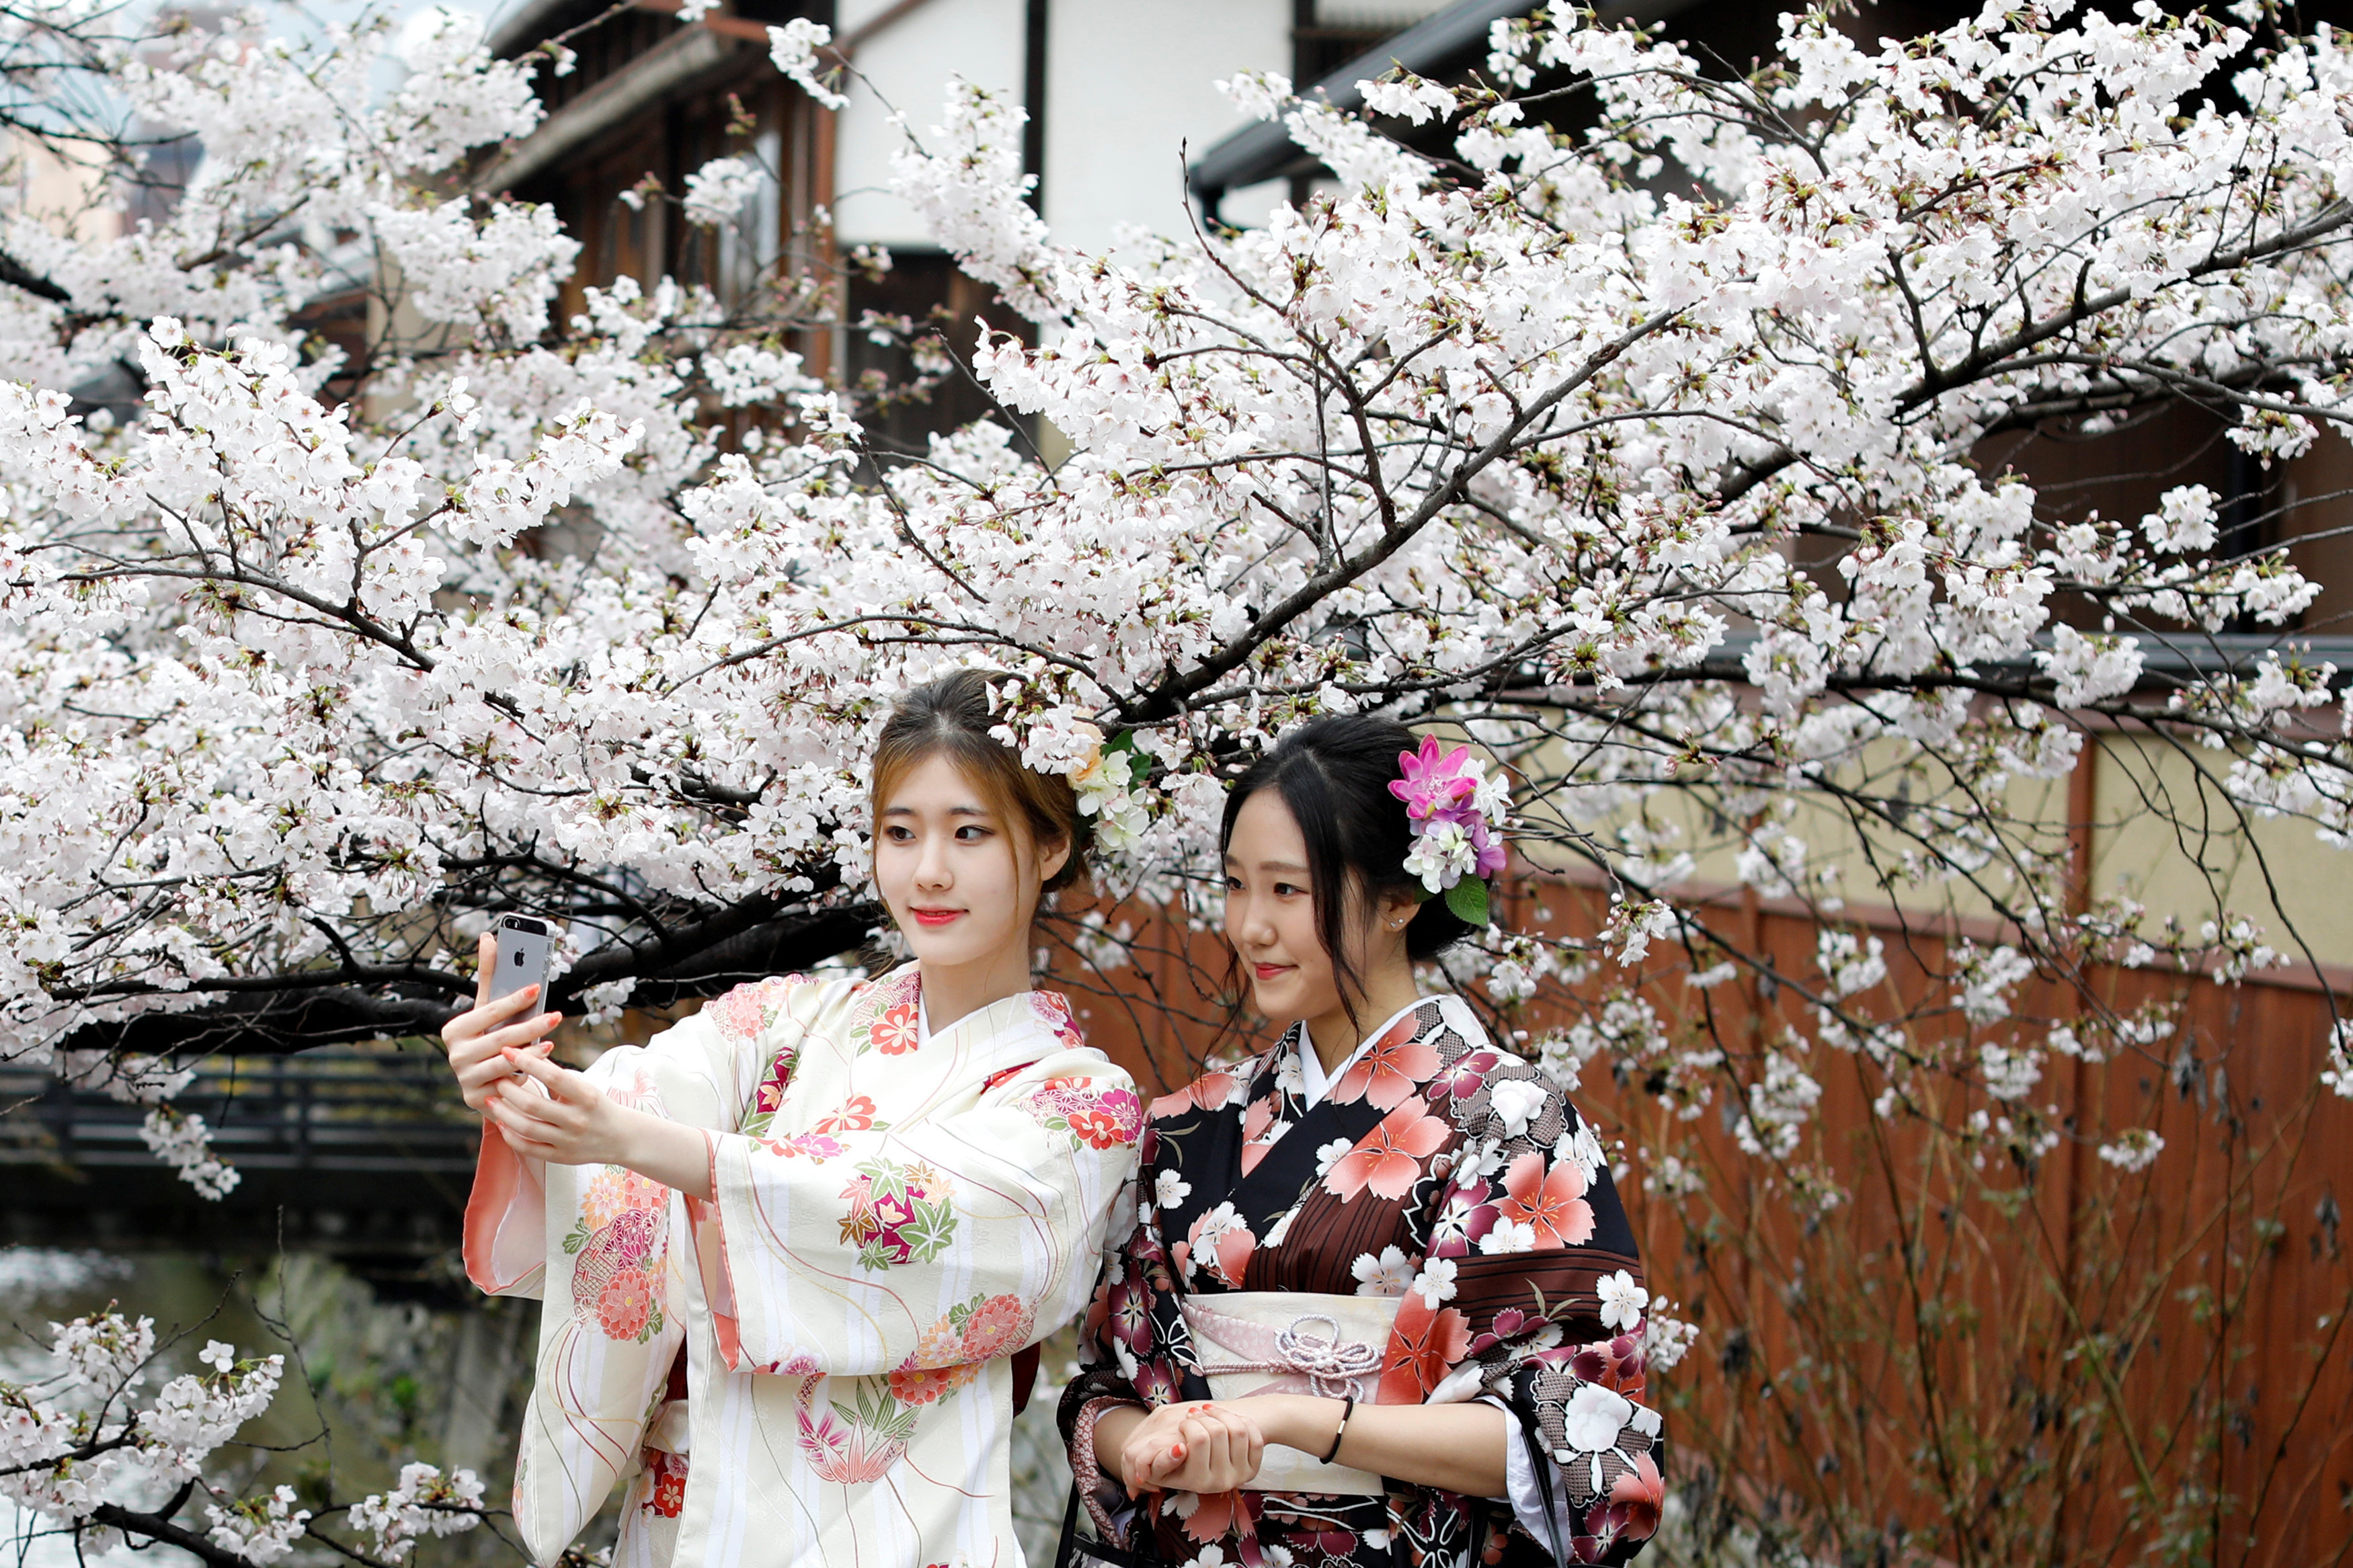 Цветы сакуры напоминают японцам о быстротечности жизни и учат ценить моменты счастья.